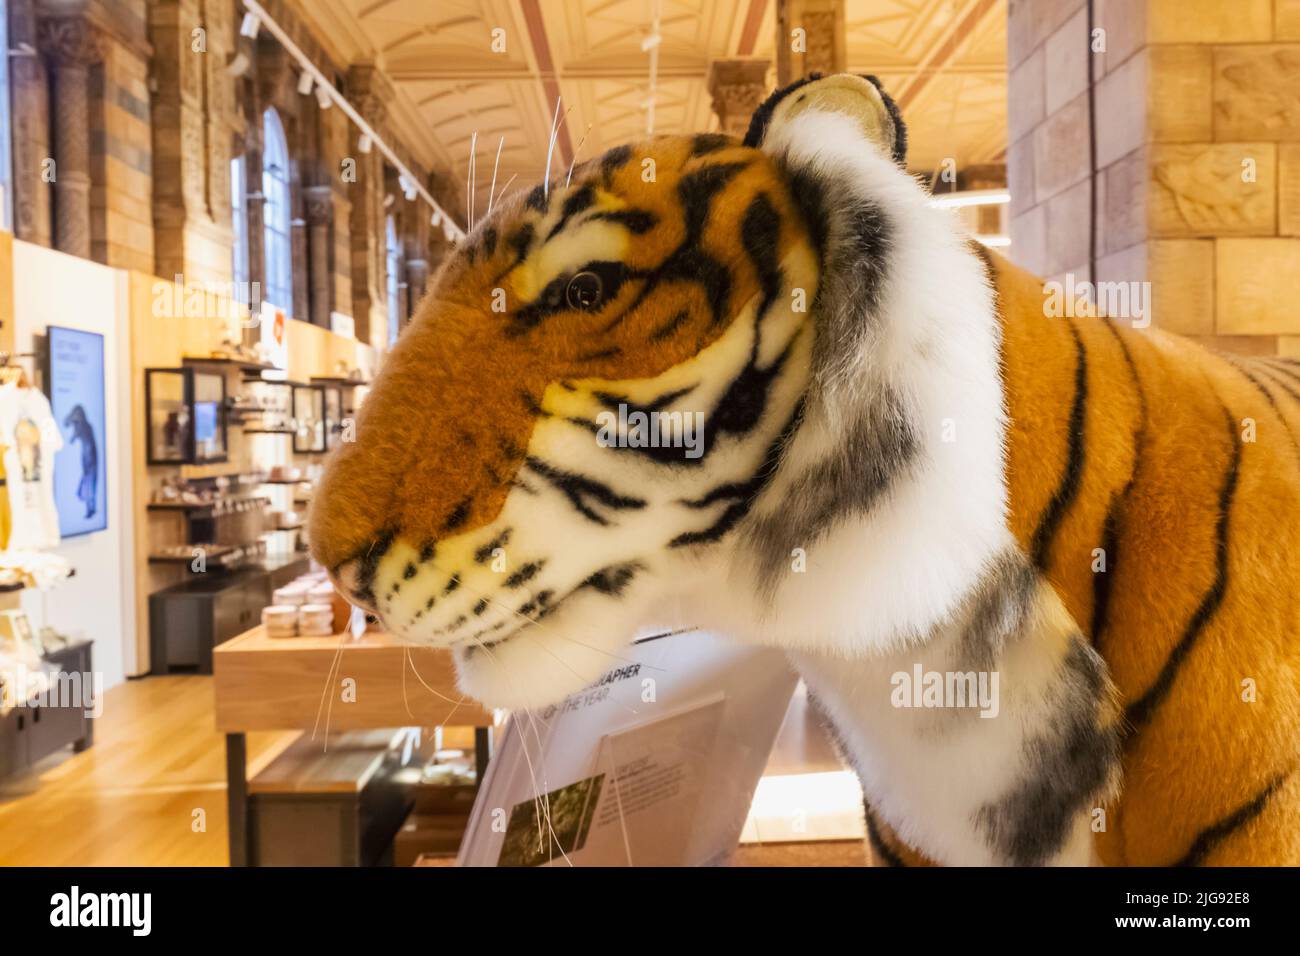 Angleterre, Londres, South Kensington, Musée d'histoire naturelle, exposition de la boutique de souvenirs de Tiger Soft Toys Banque D'Images